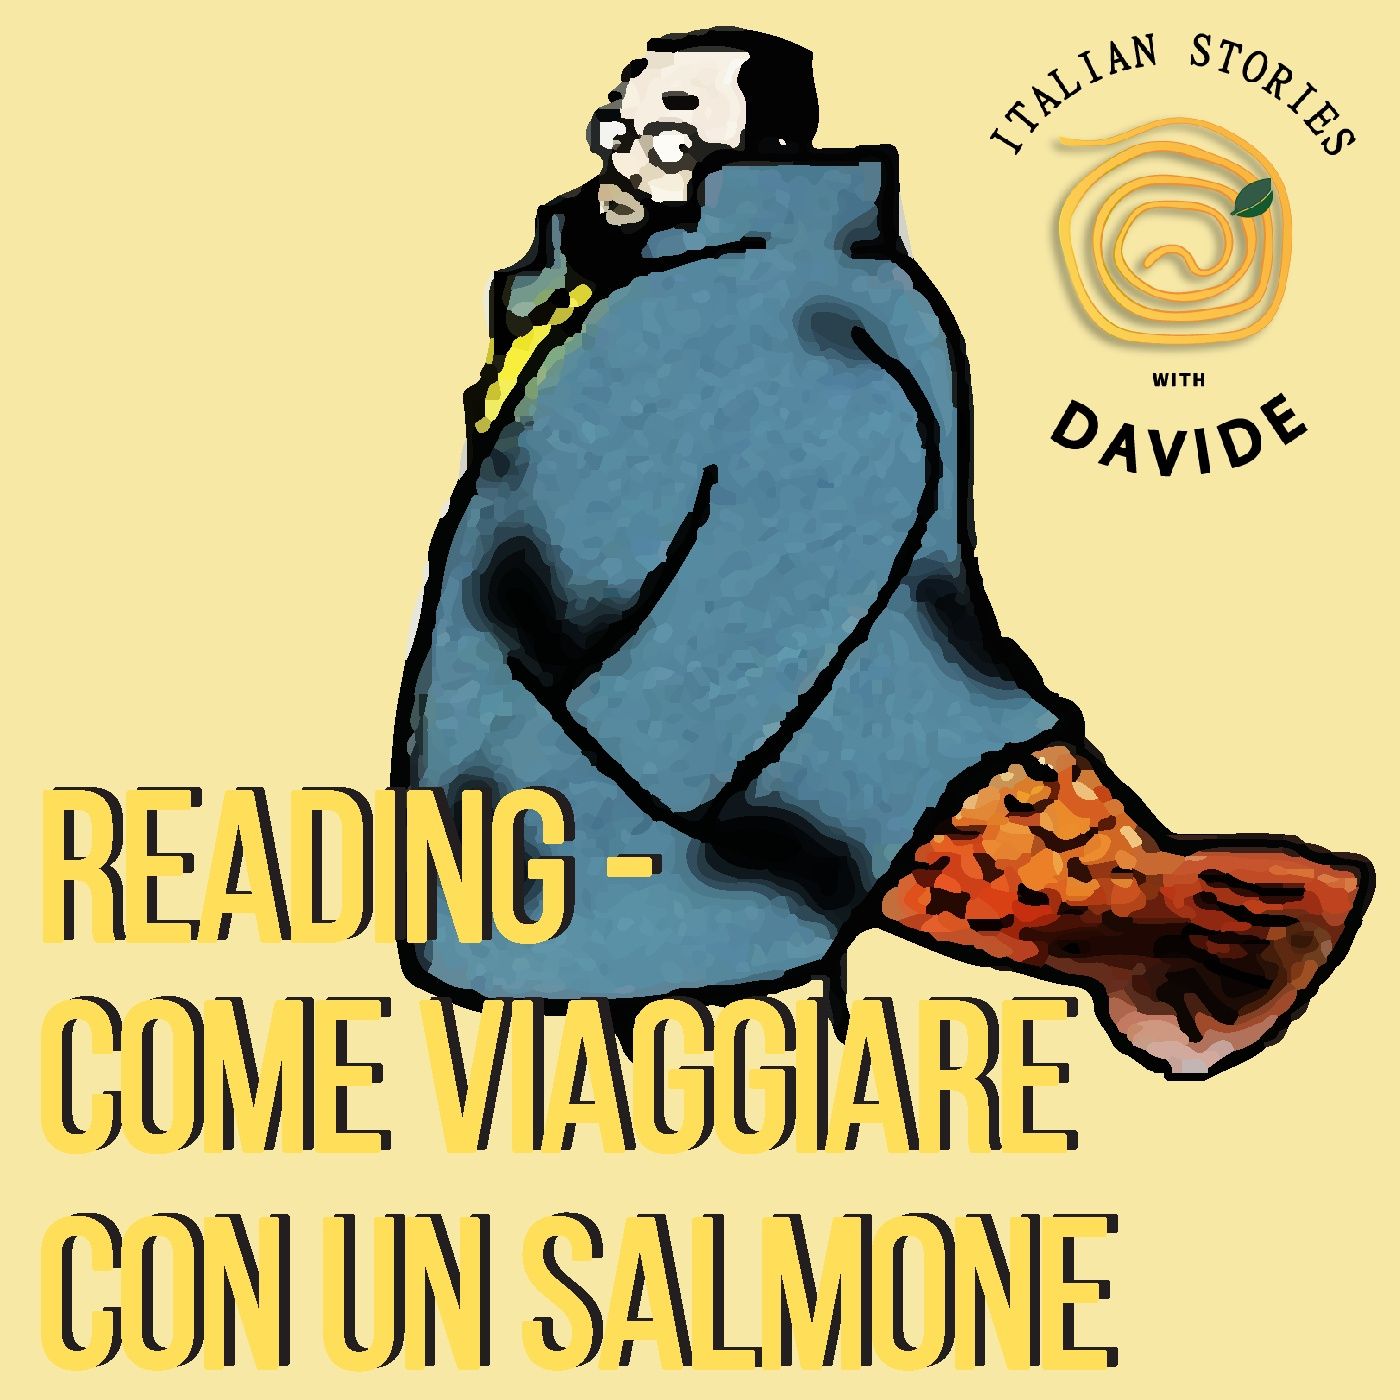 READING - Come viaggiare con un salmone